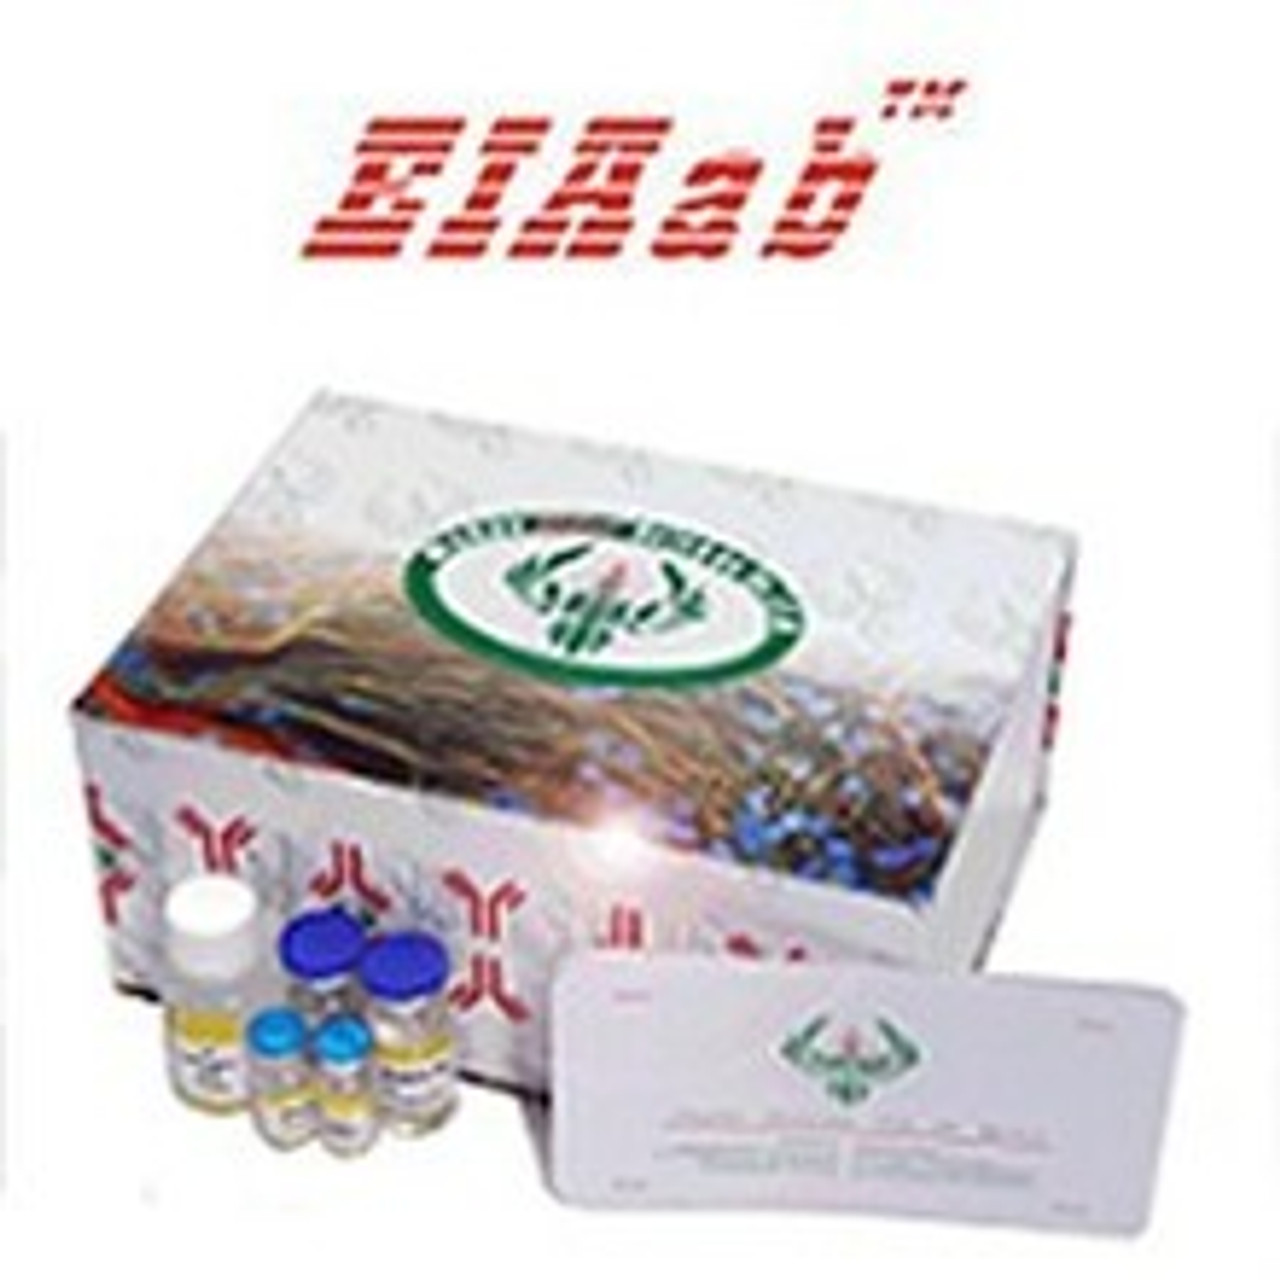 General LTAD/Lipoteichoic acid ELISA Kit